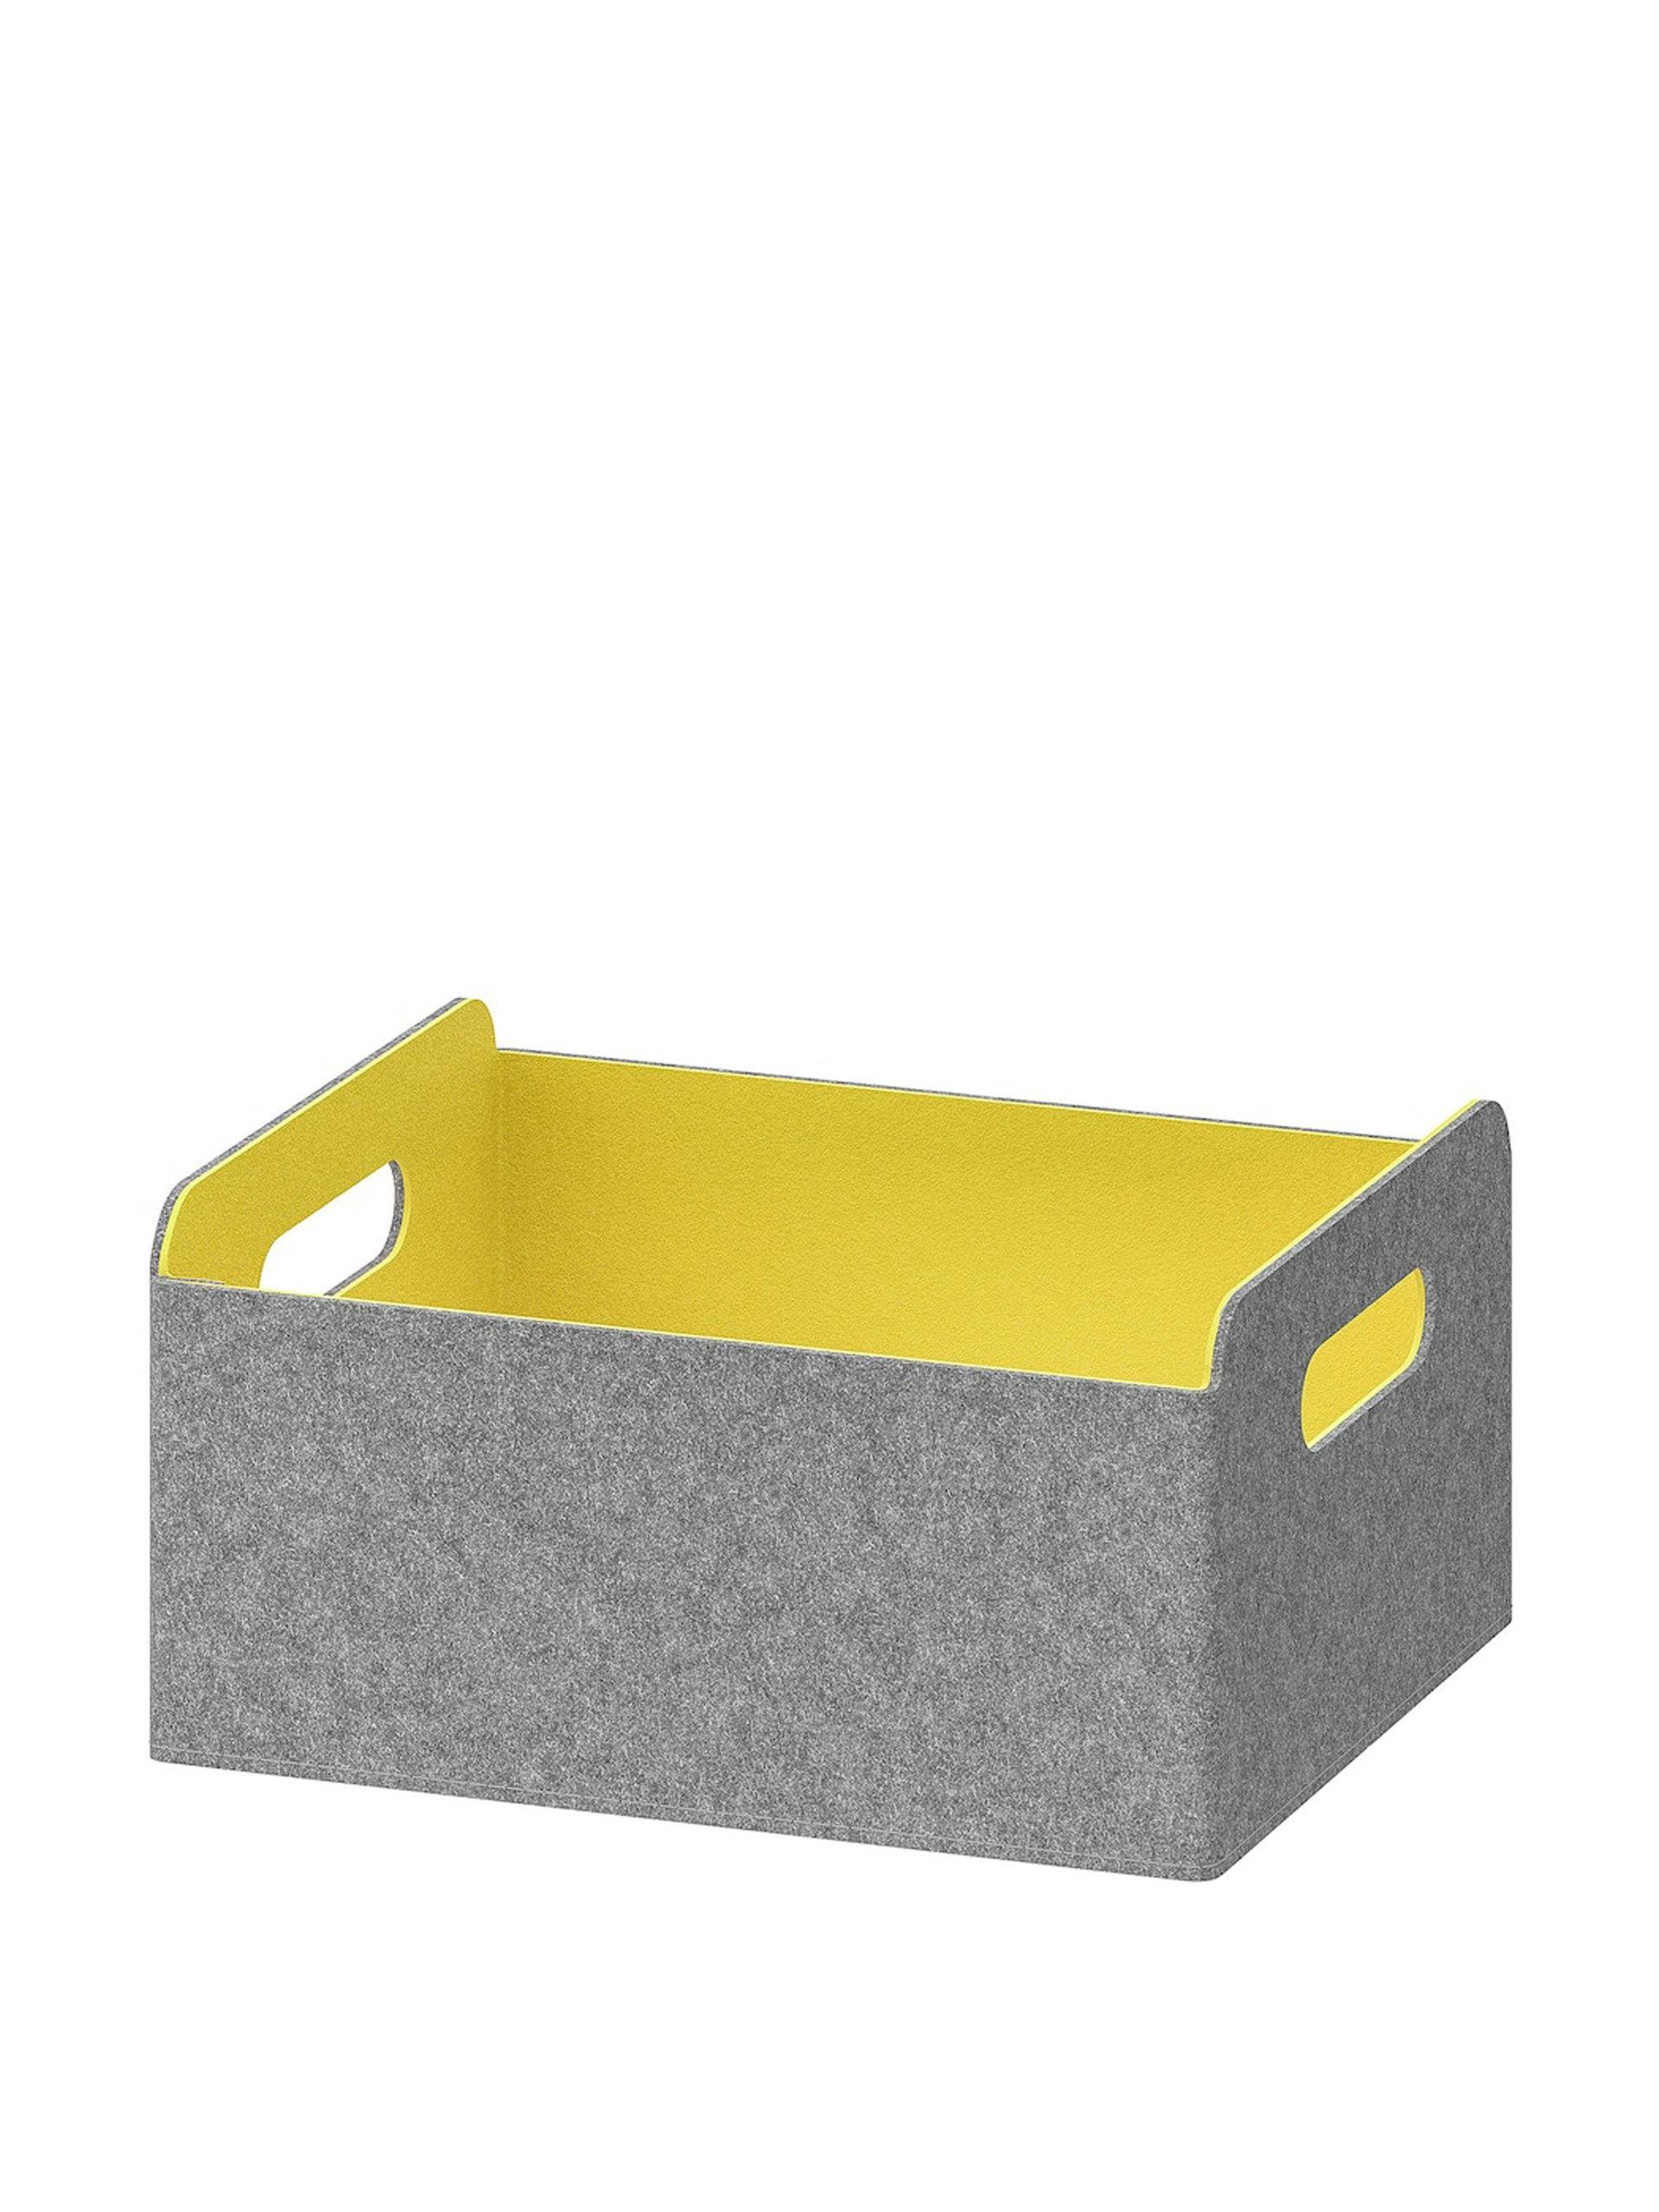 Yellow box storage